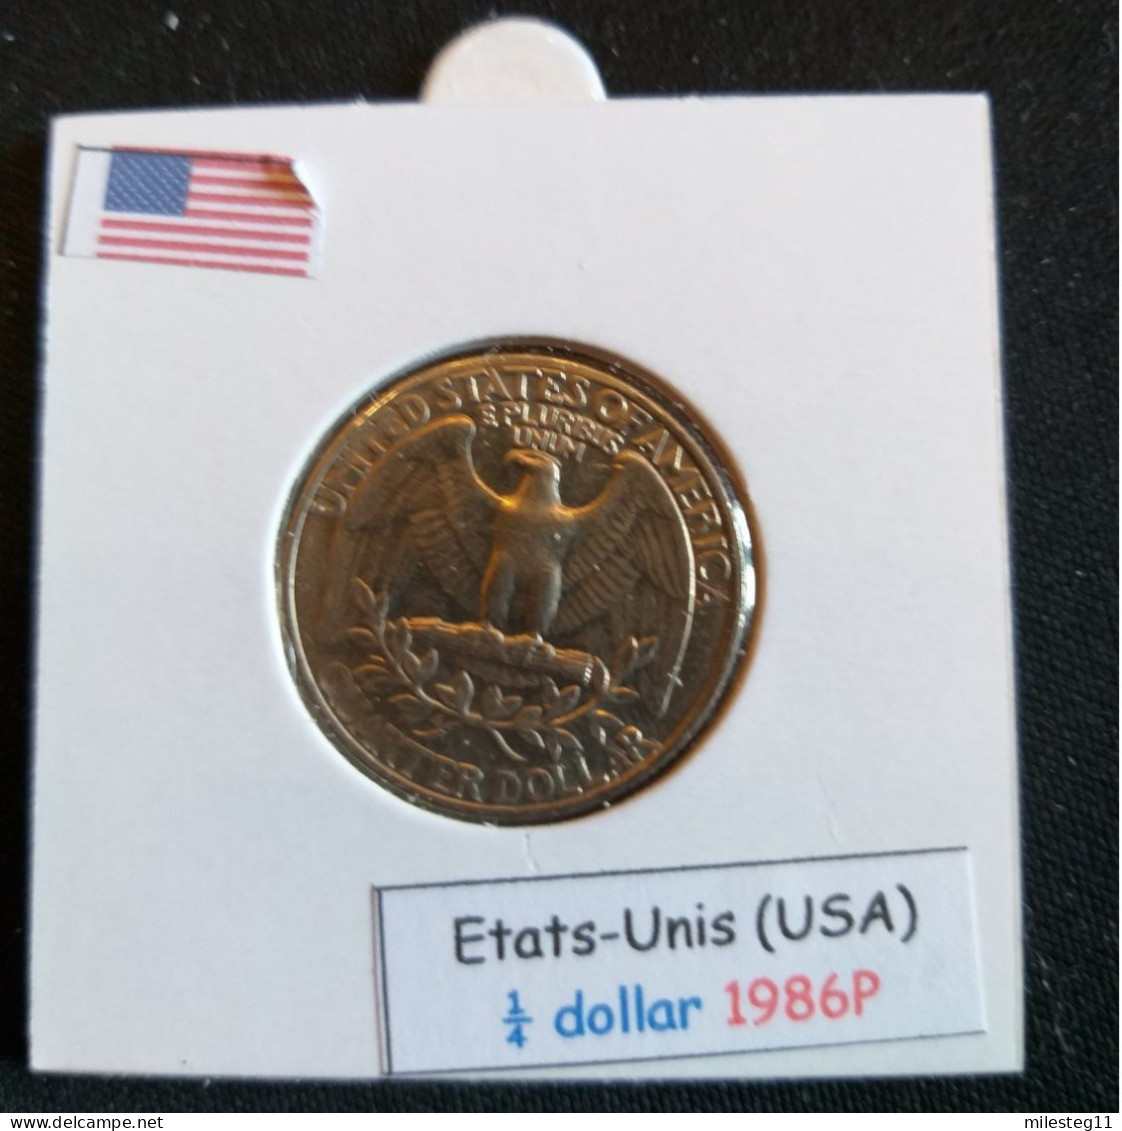 Etats-Unis Quater Dollar 1986P - 1932-1998: Washington